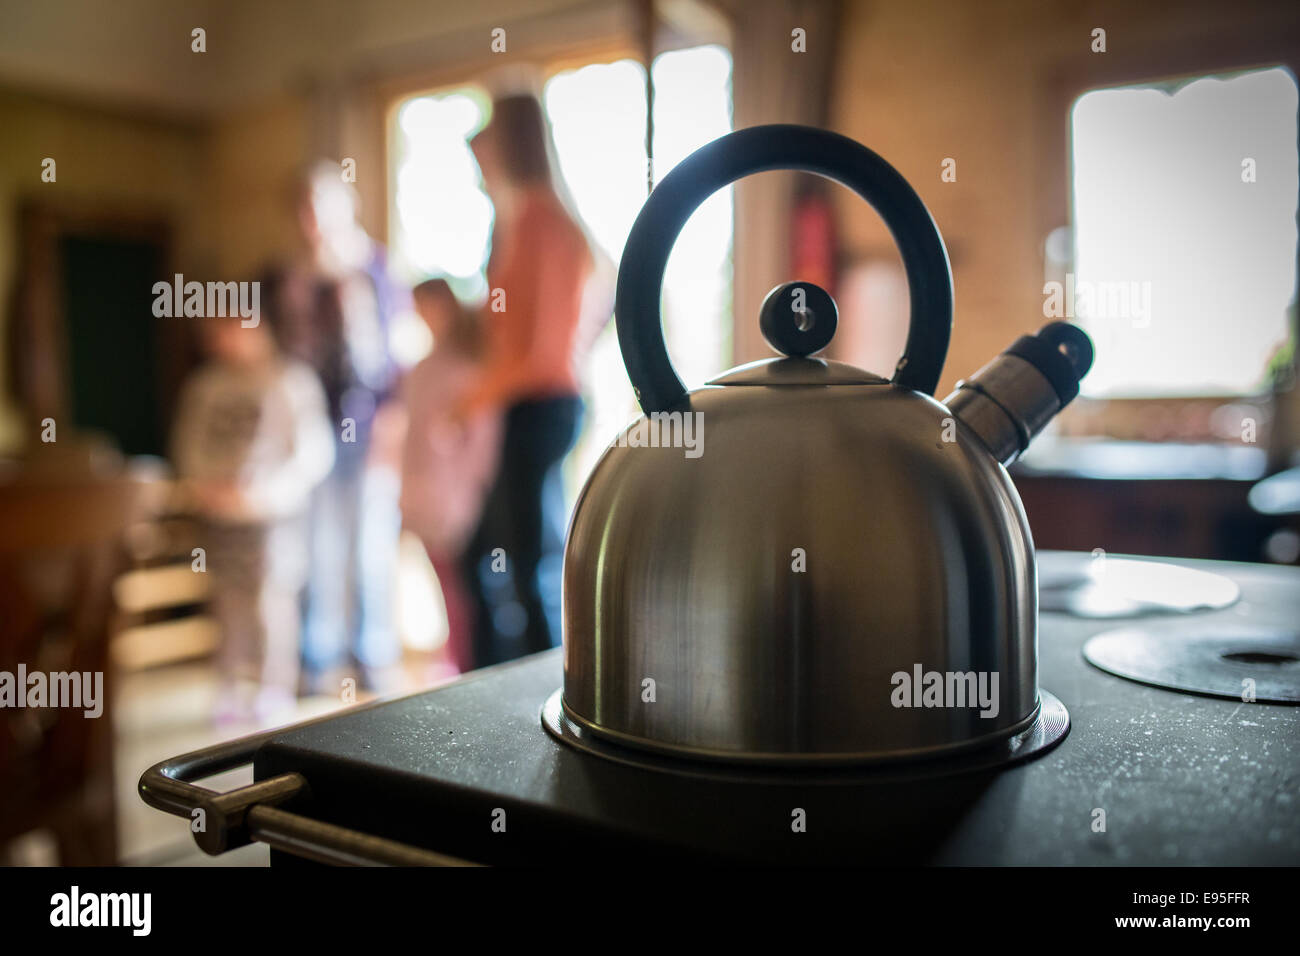 Russell hobbs kettle fotografías e imágenes de alta resolución - Alamy